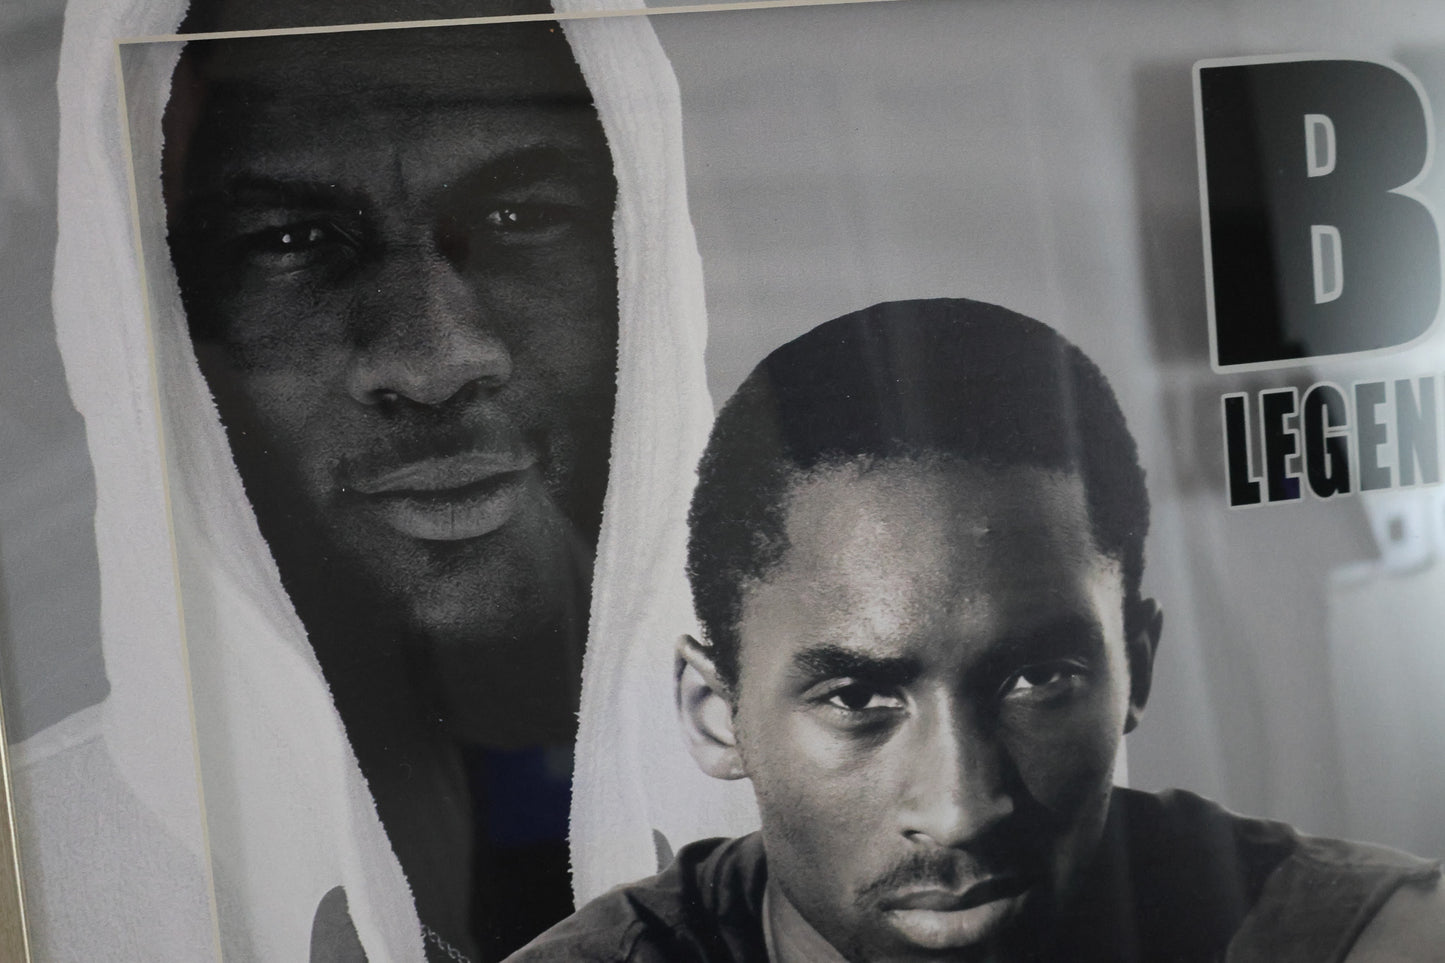 Michael Jordan & Kobe Bryant Laser Engraved Signature "Be Legendary" Frame